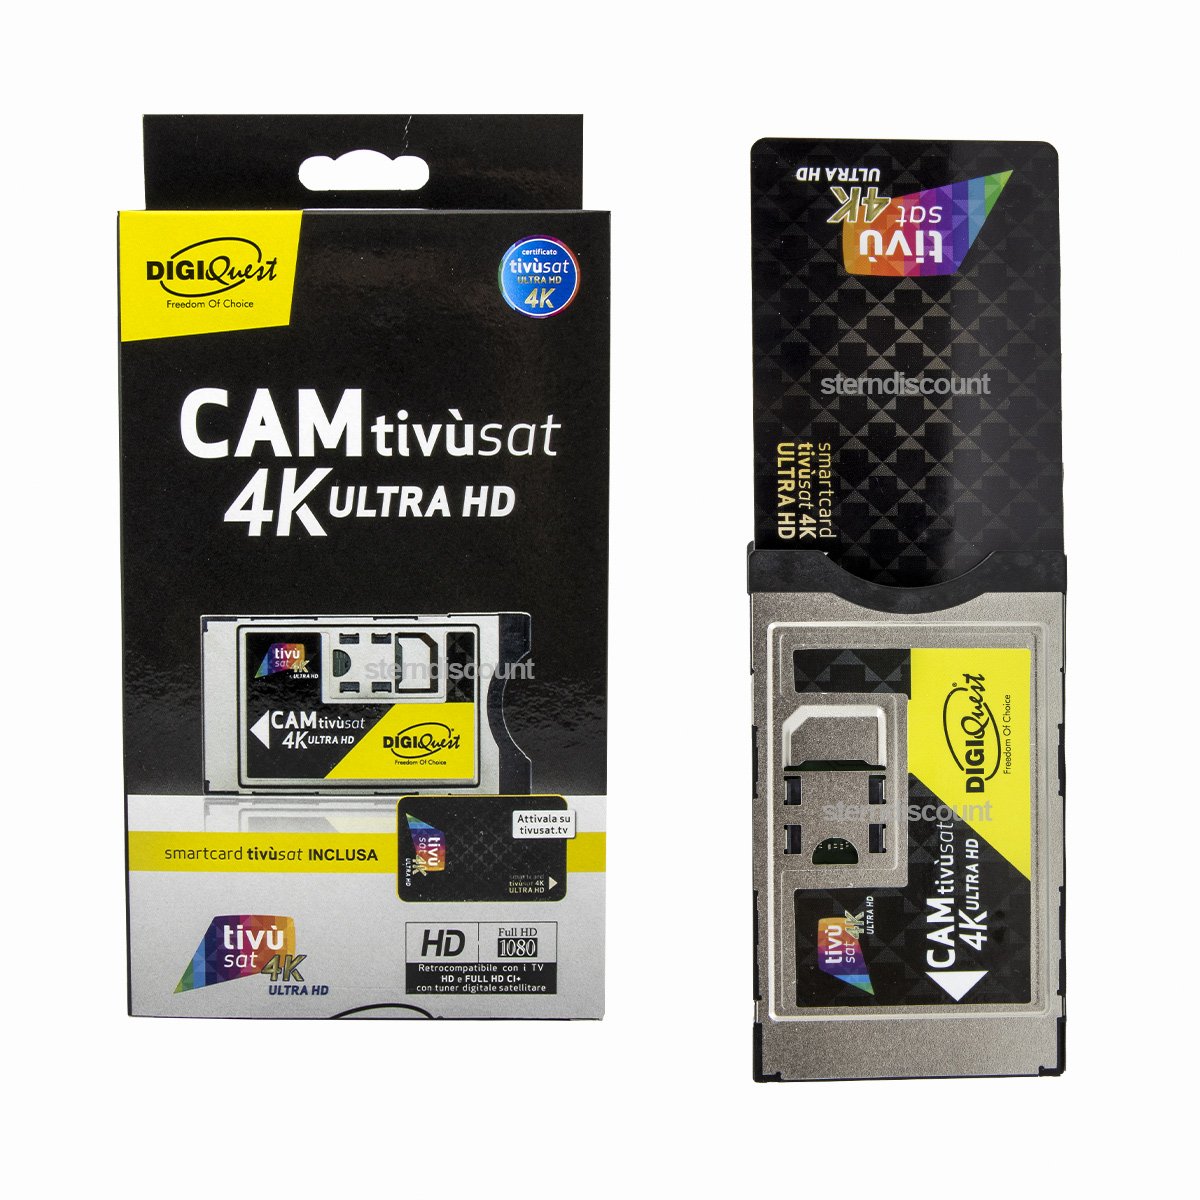 tivusat 4k Cam smartcard